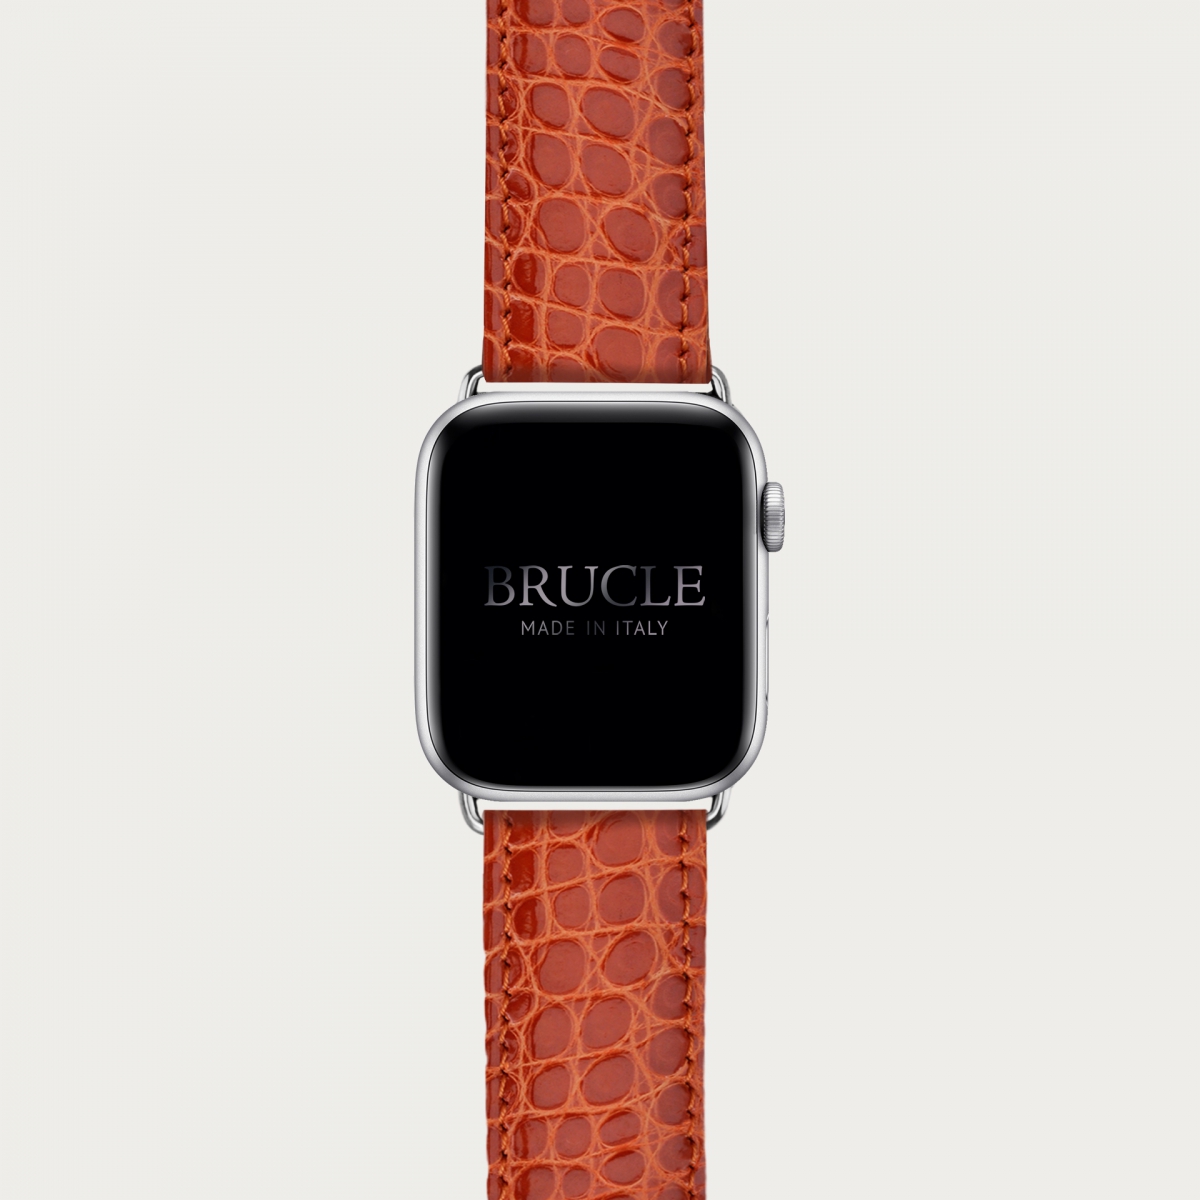 Correa de reloj compatible con Apple Watch / Samsung smartwatch, negro